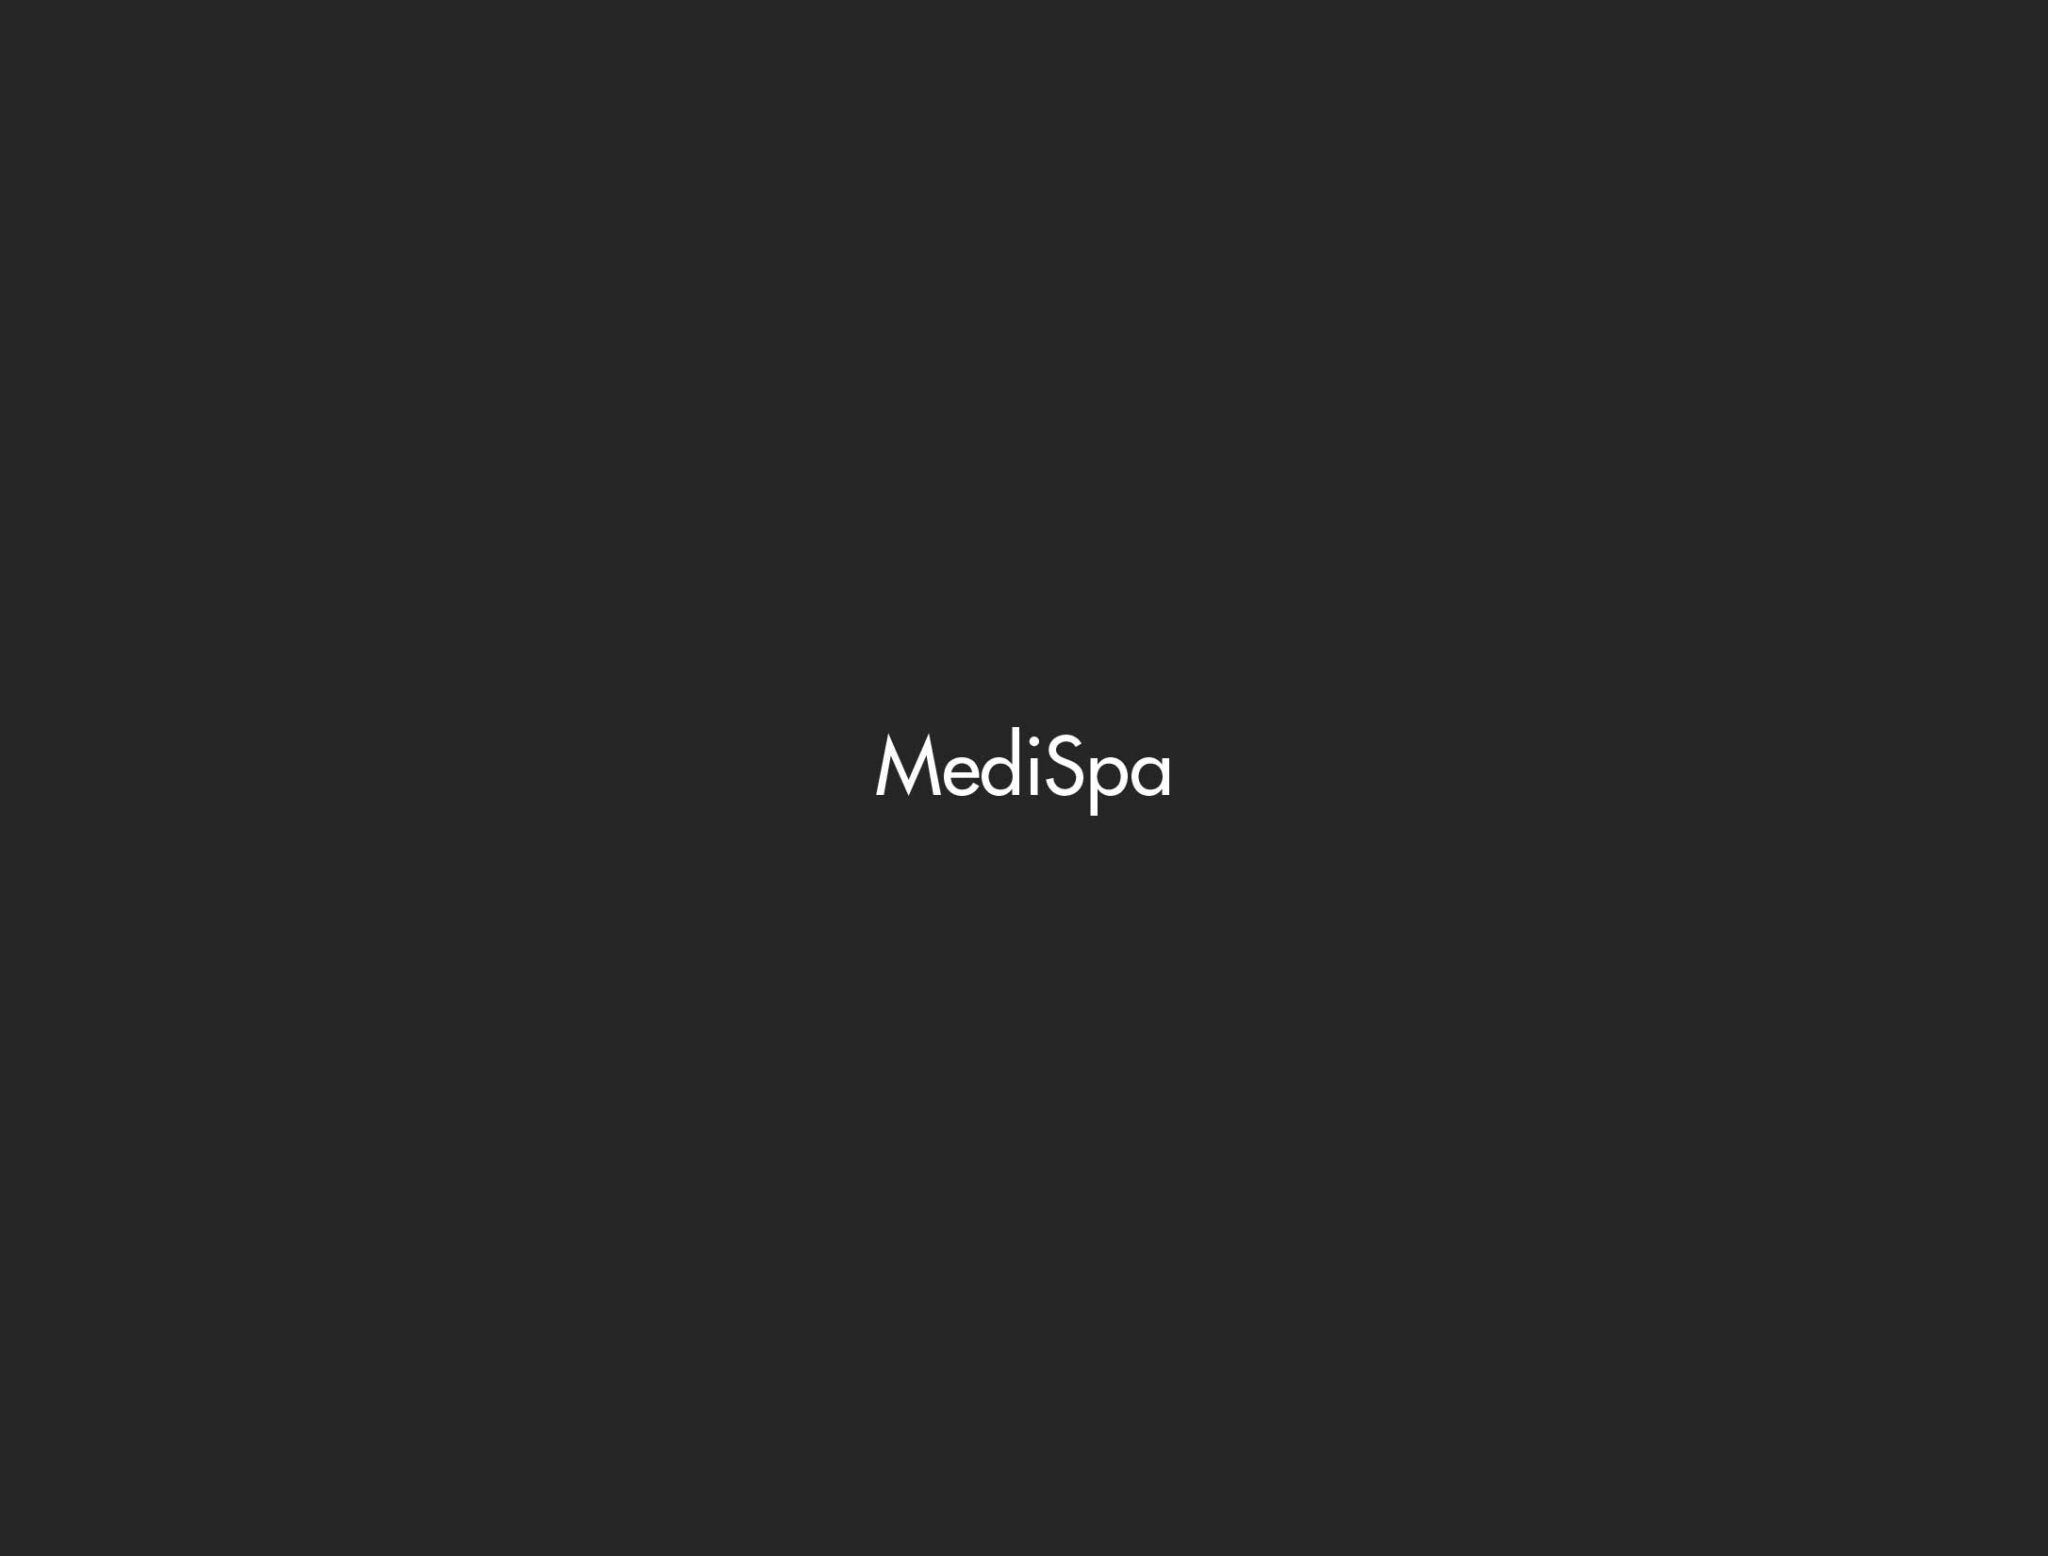 MediSpa